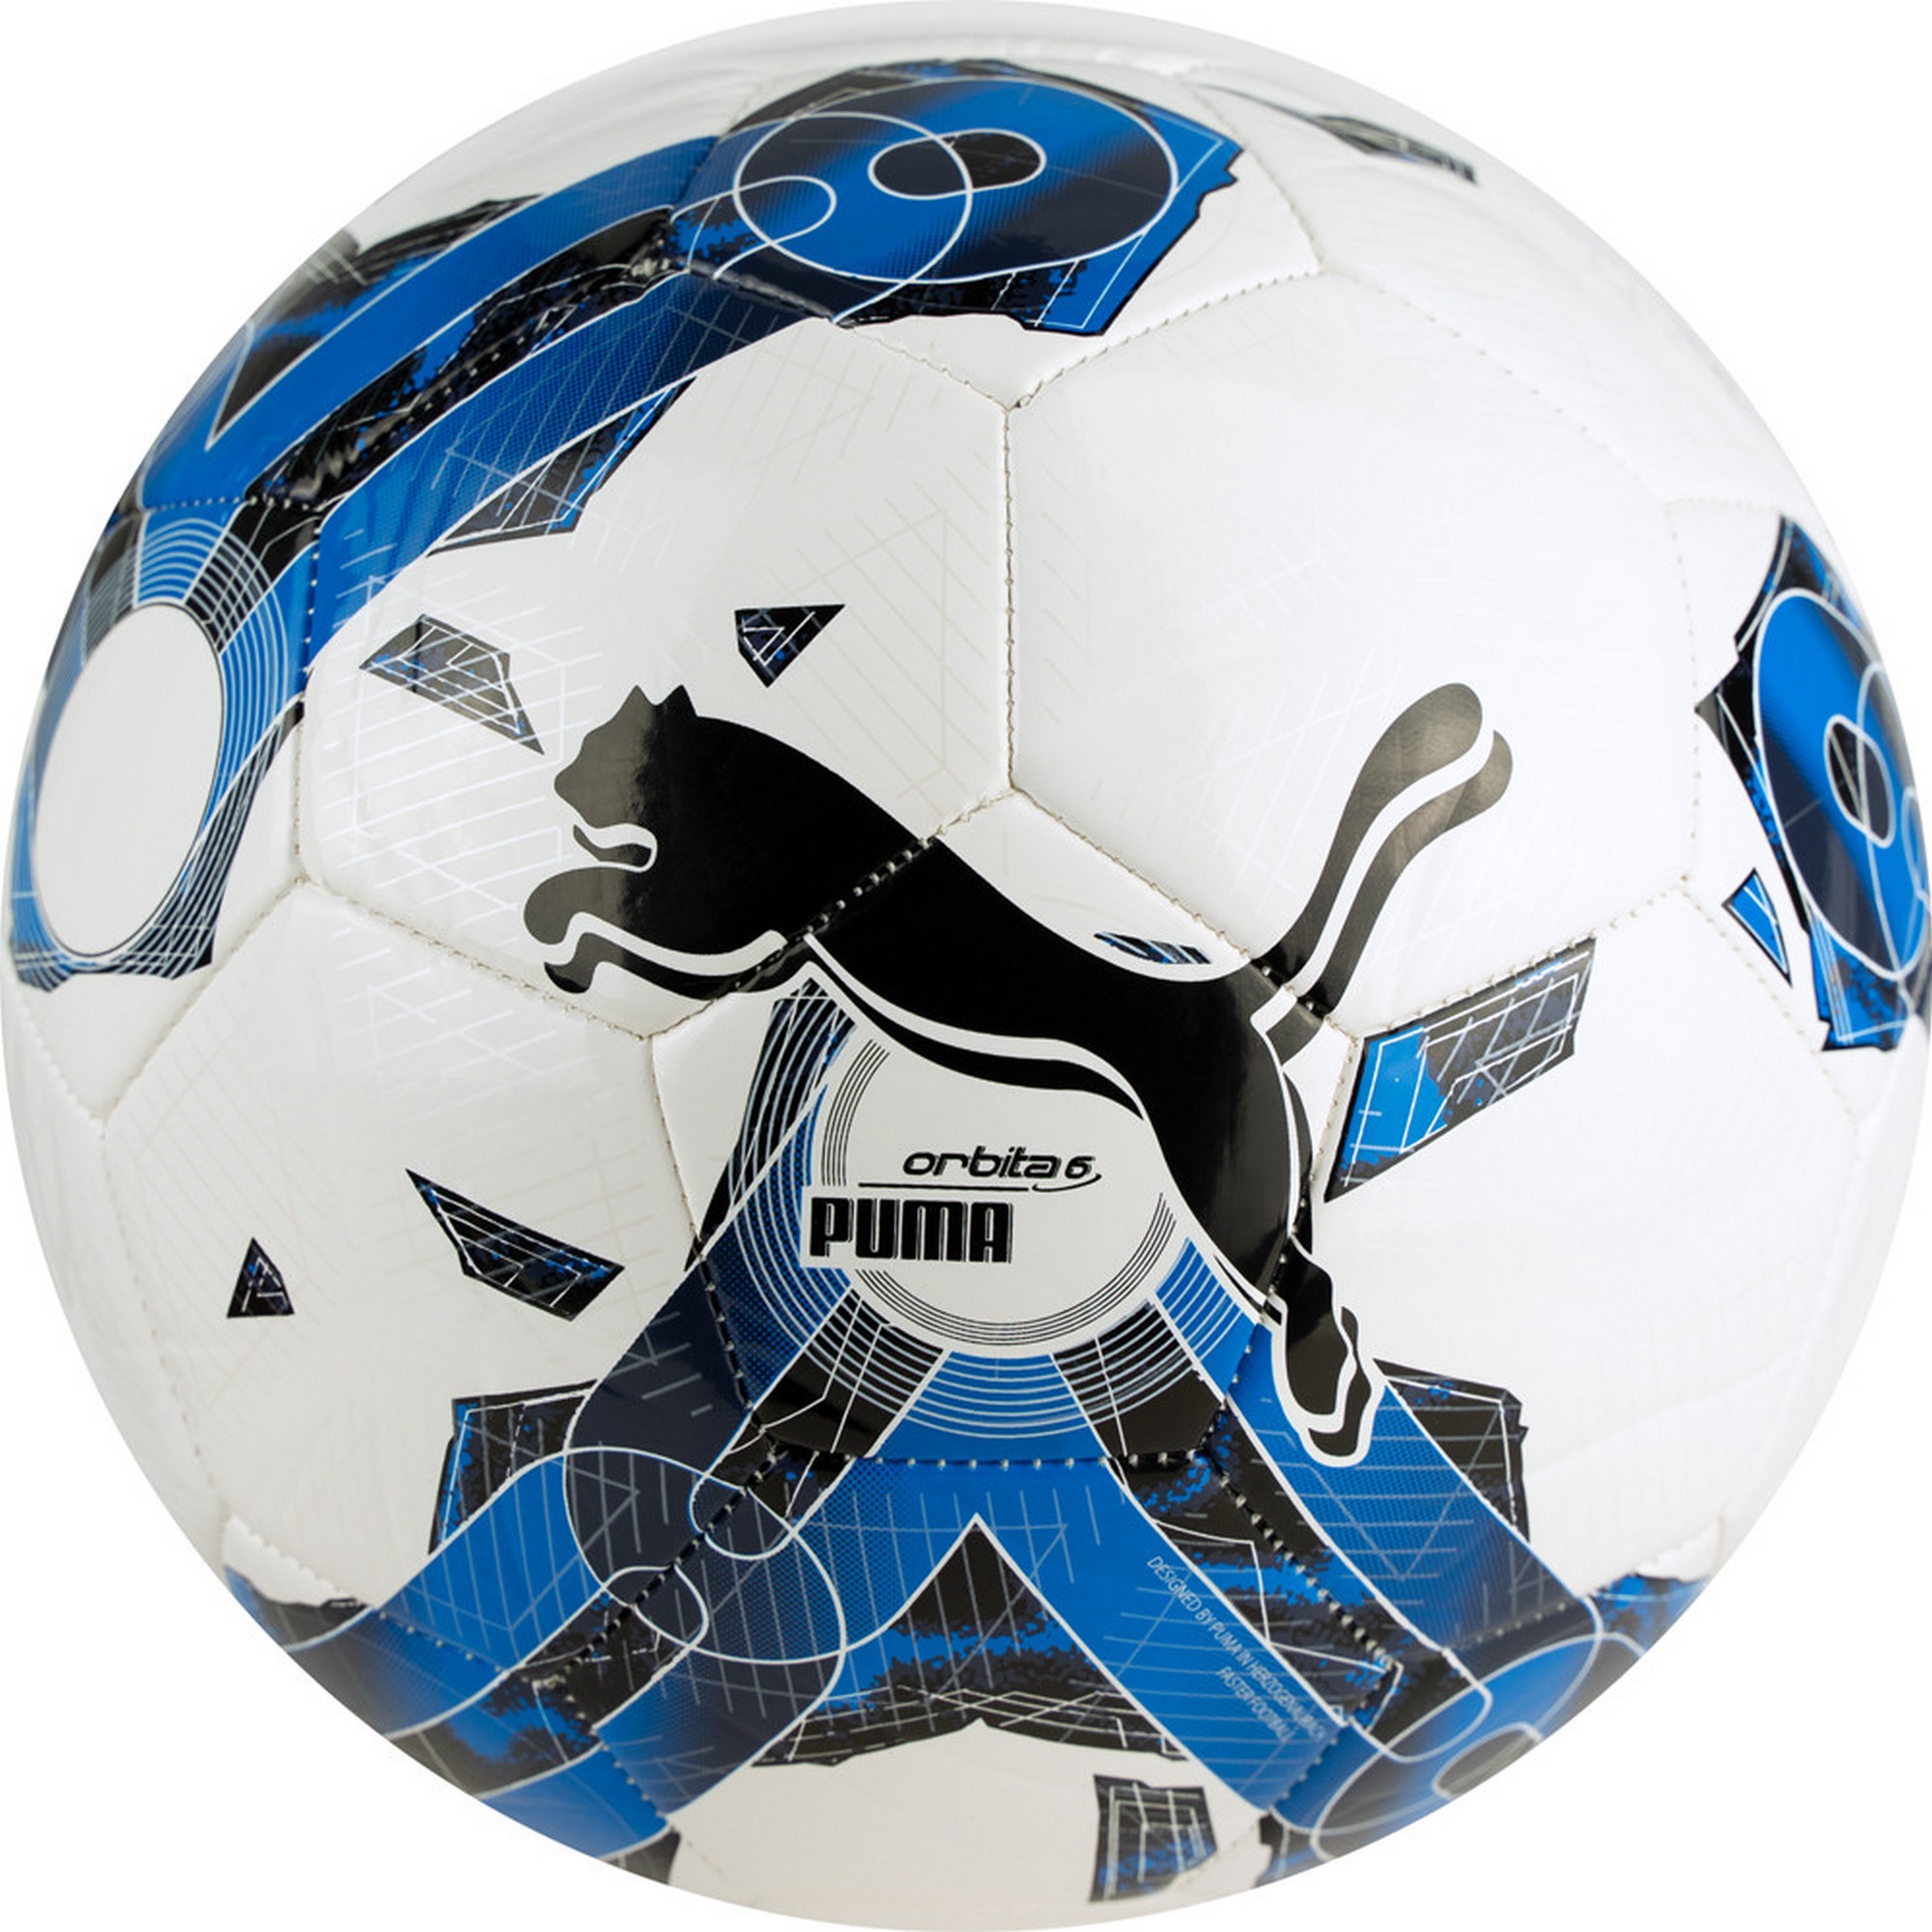 Мяч футбольный Puma Orbita 6 MS 08378703 р.5 2000_2000